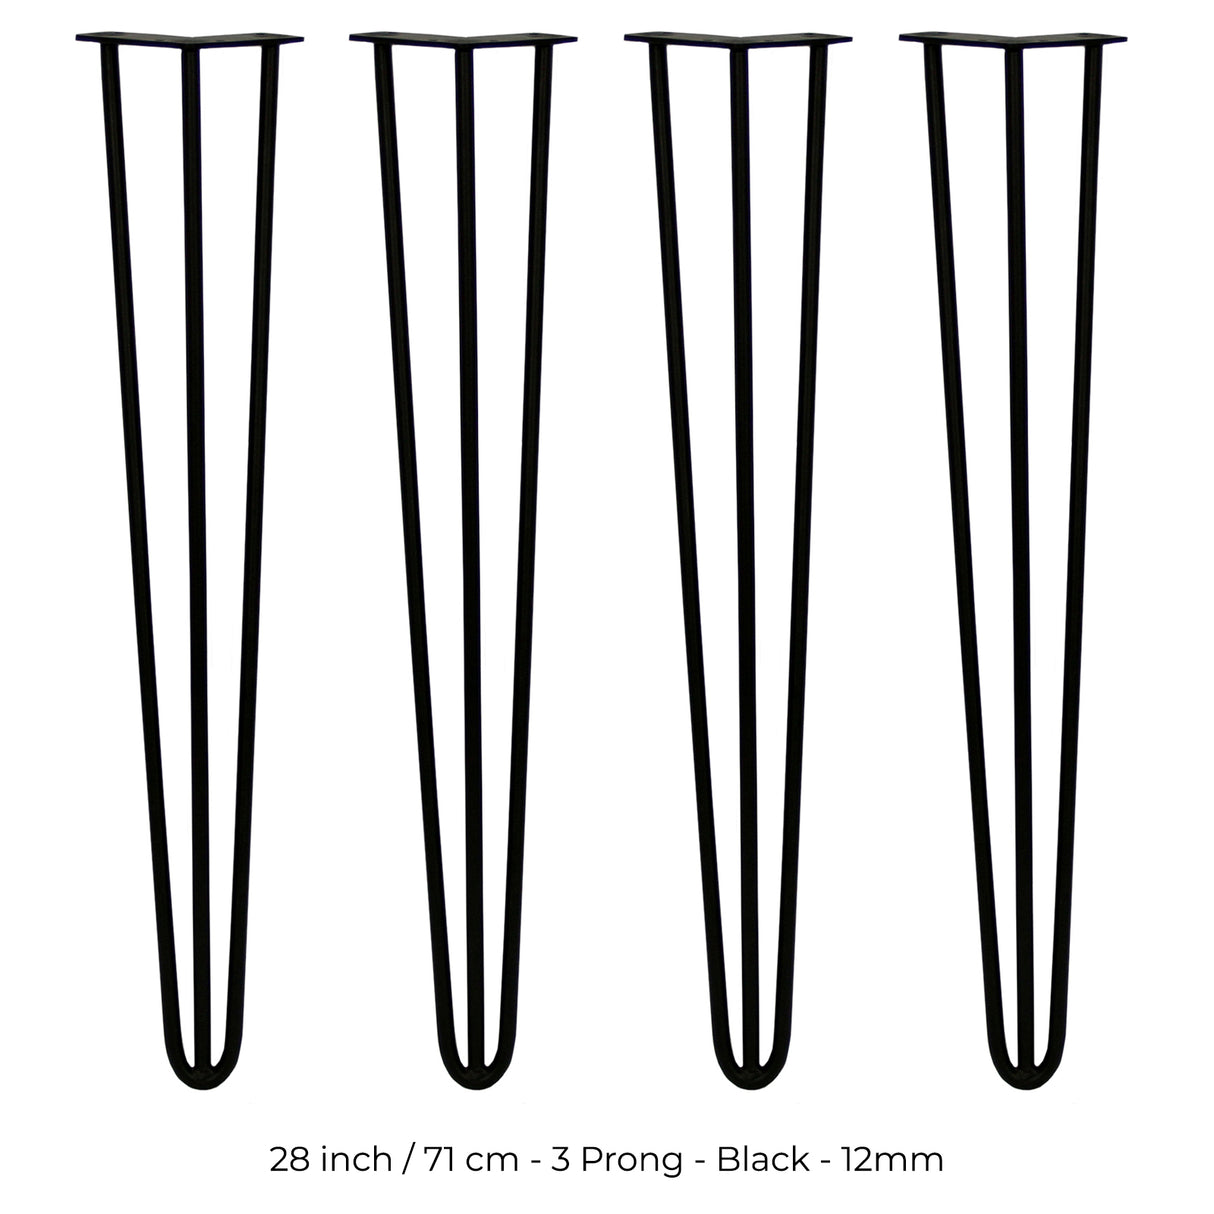 4 Patas de Horquilla SkiSki Legs 71cm Acero Negro 3 Dientes 12mm